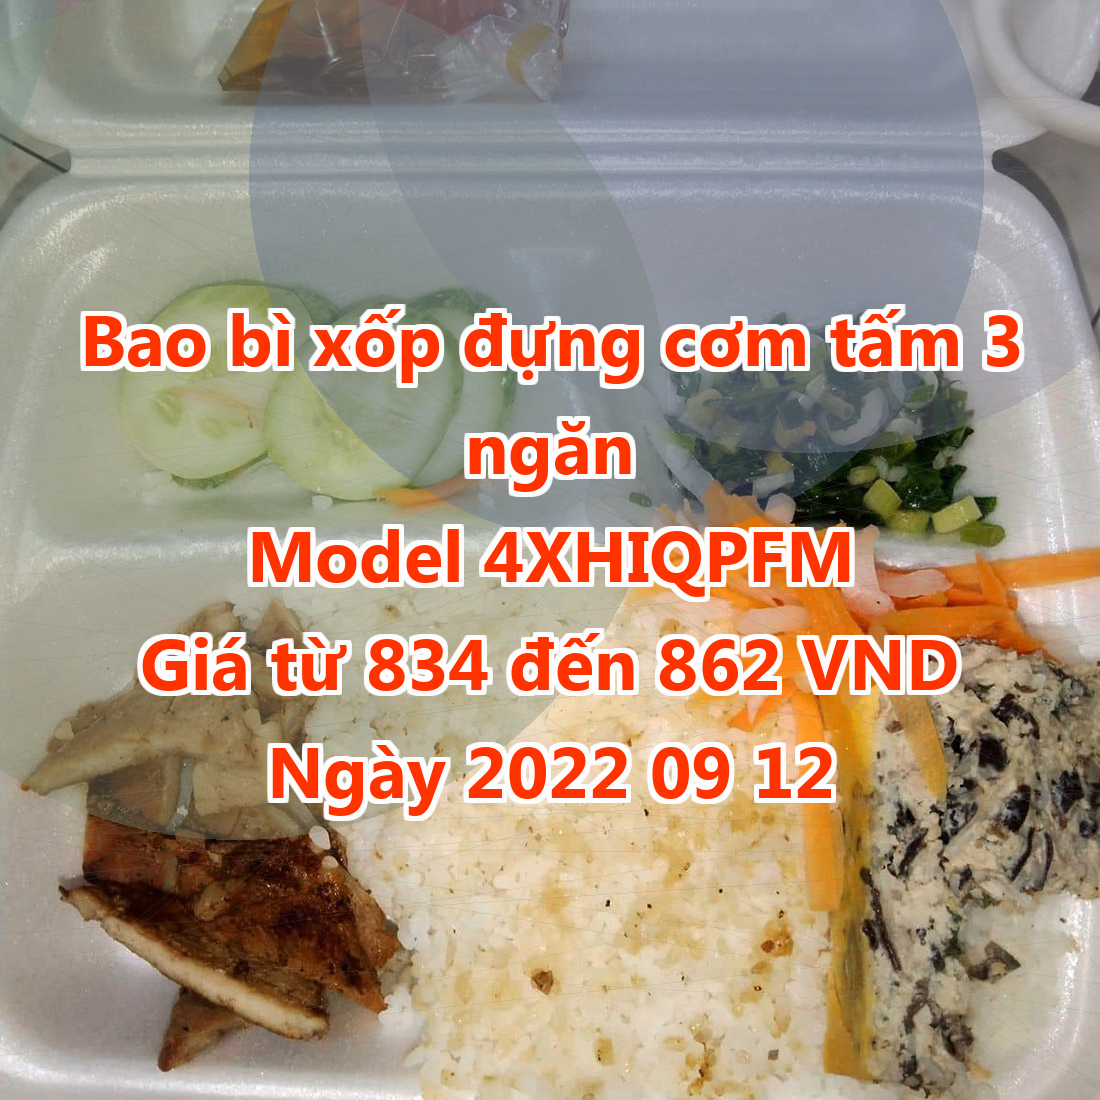 Bao bì xốp đựng cơm tấm 3 ngăn - Model 4XHIQPFM - Giá 834 VND